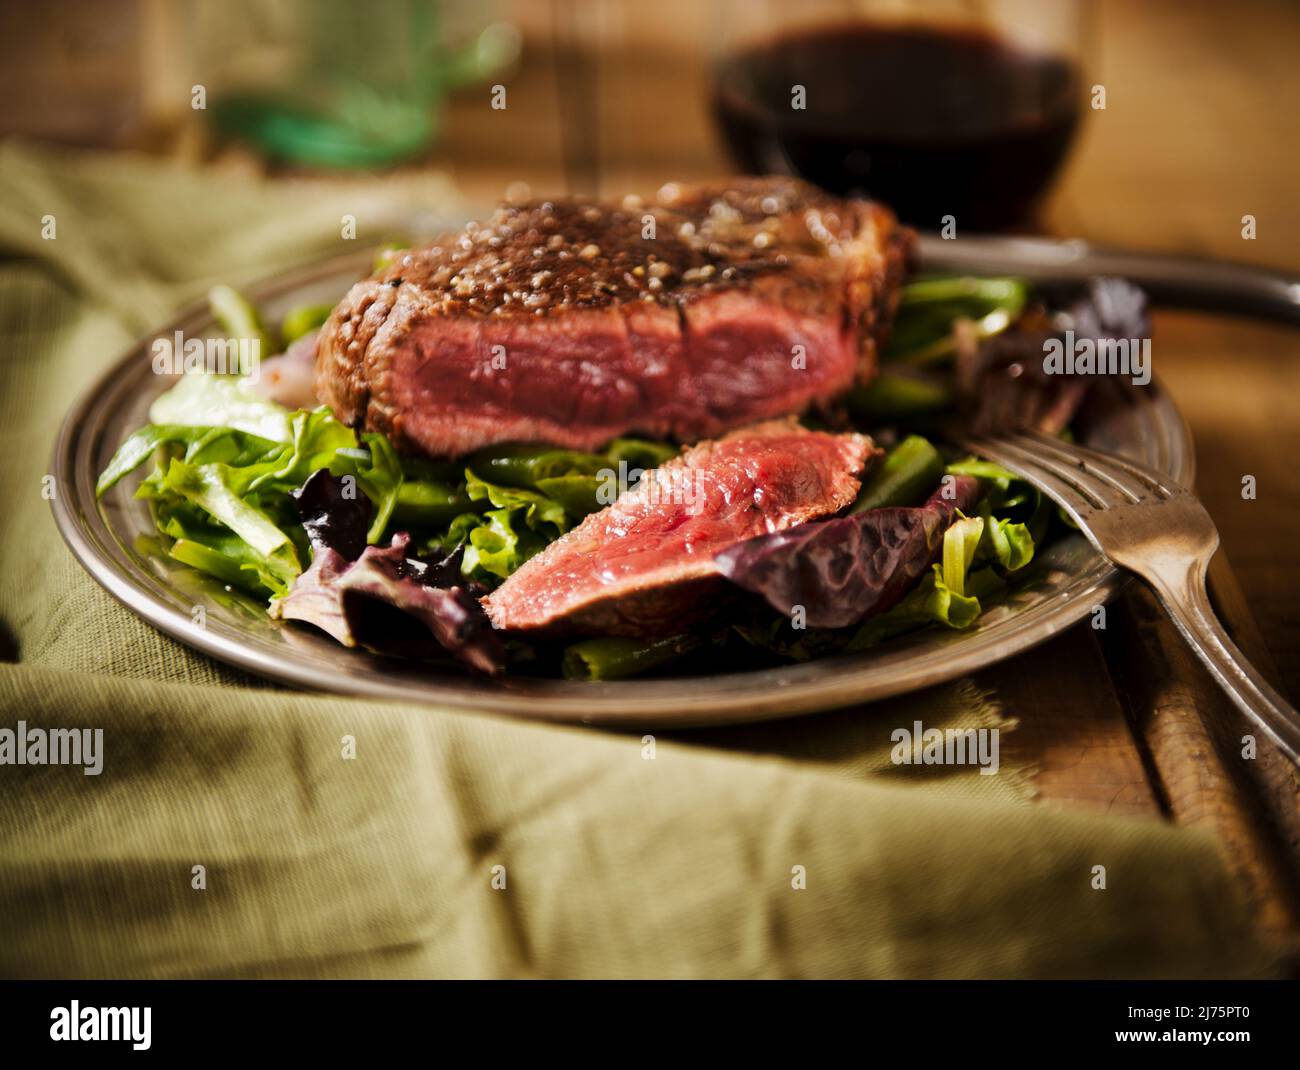 Sliced Grass Fed Sirloin Steak auf einem Bett mit Wein Stockfoto